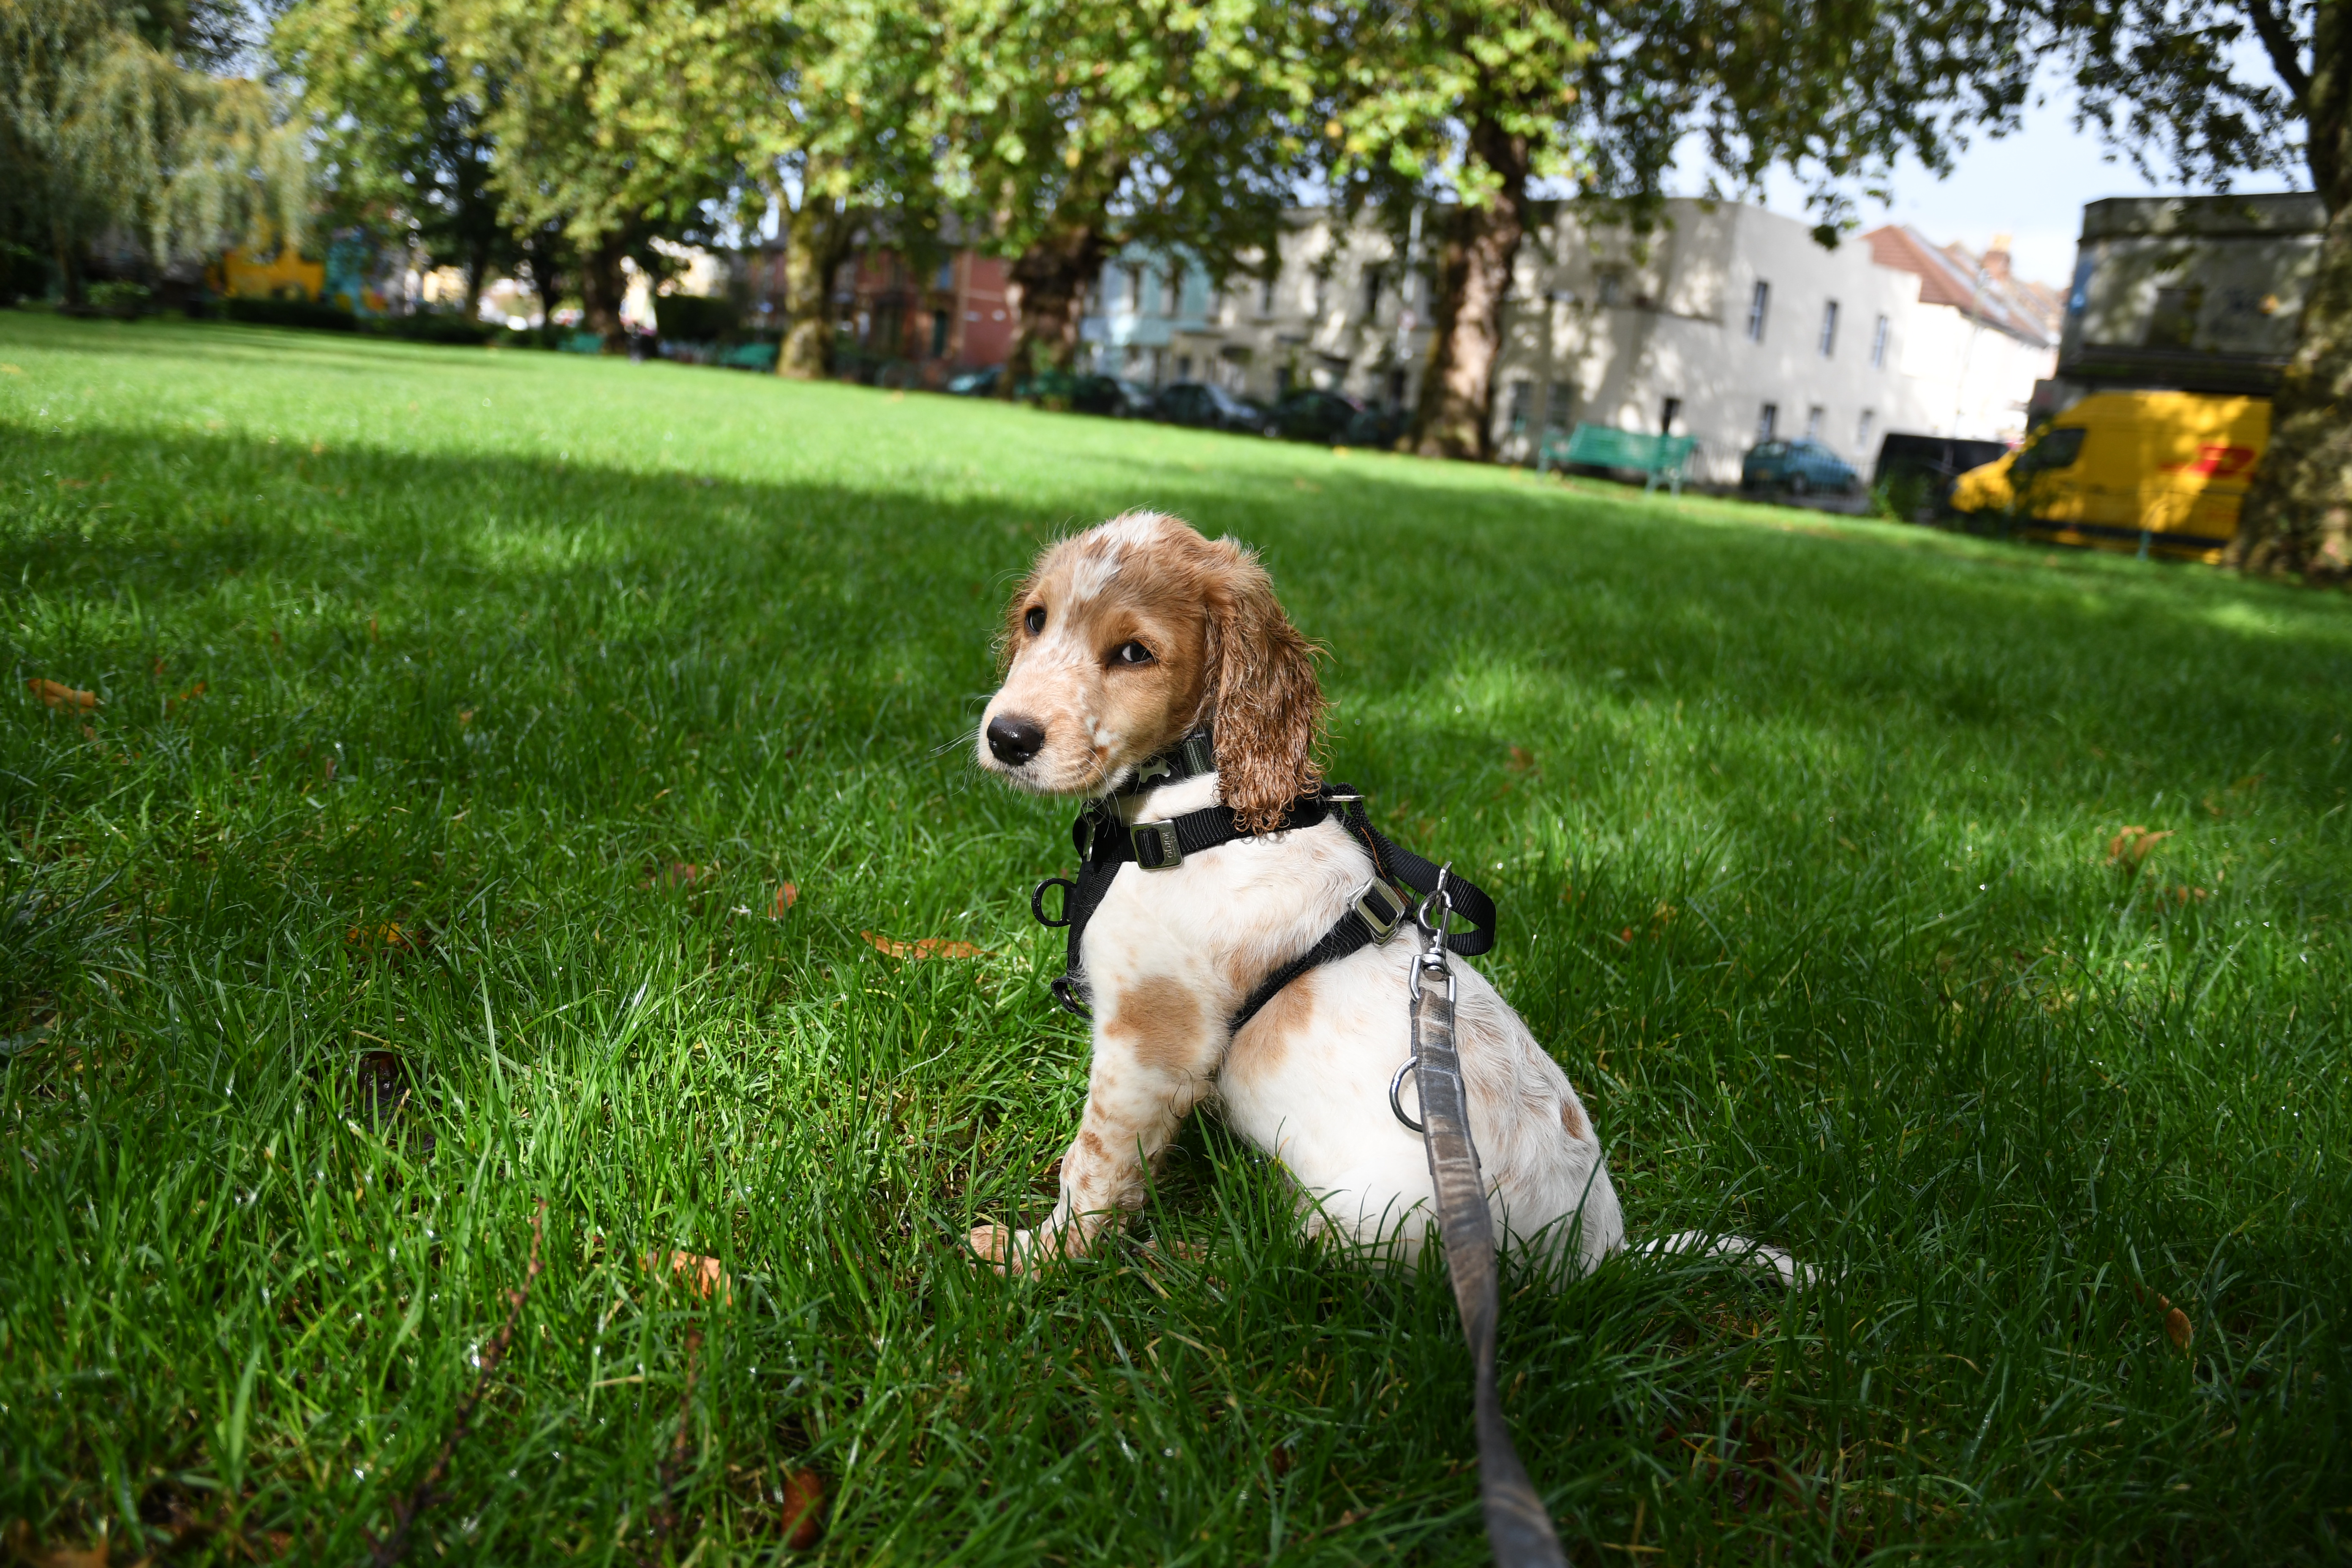 Bristol puppy walks